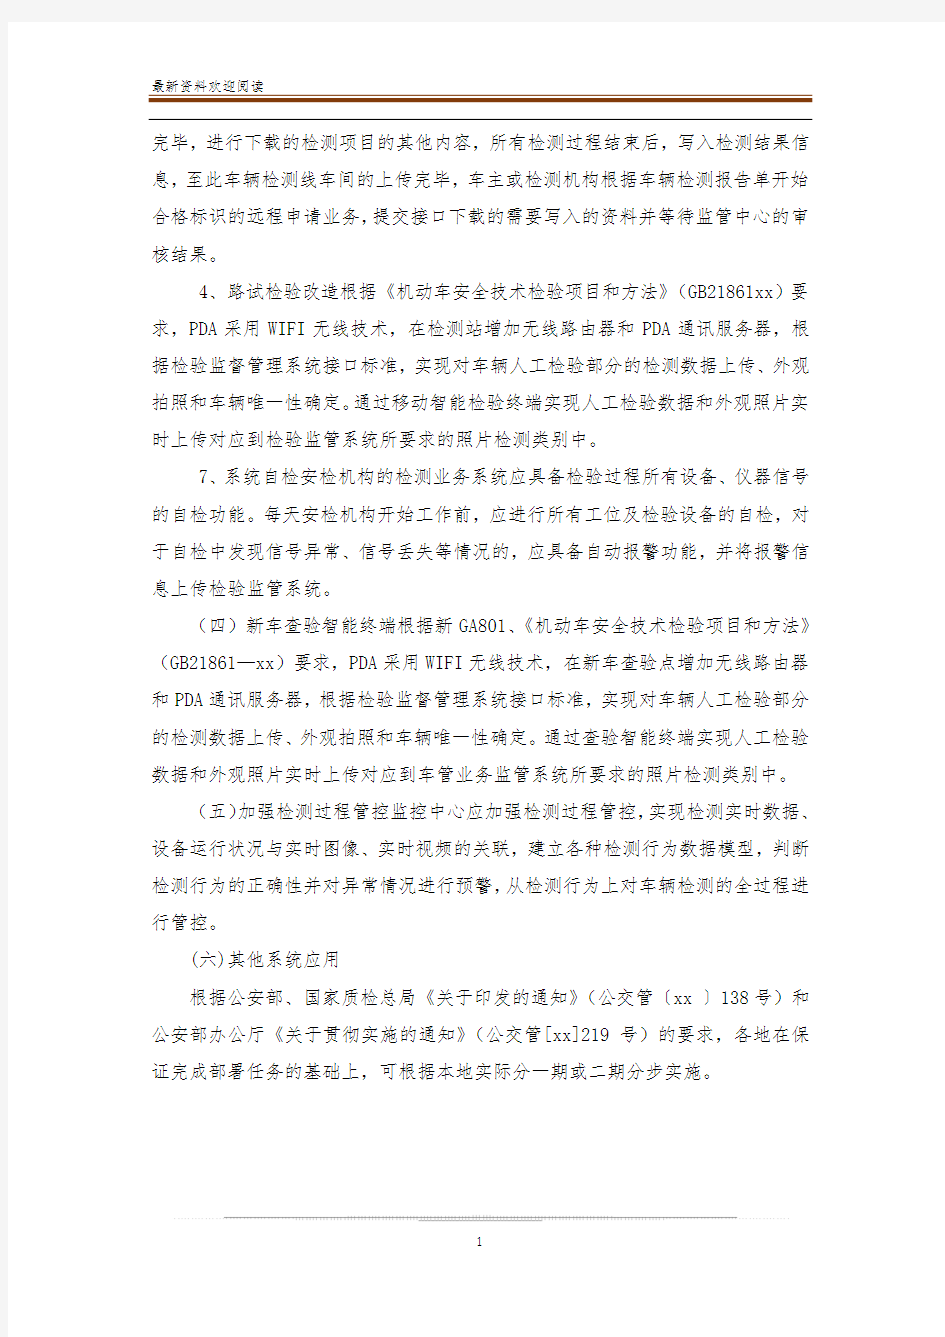 《浙江省机动车安全技术检验监管系统建设方案》